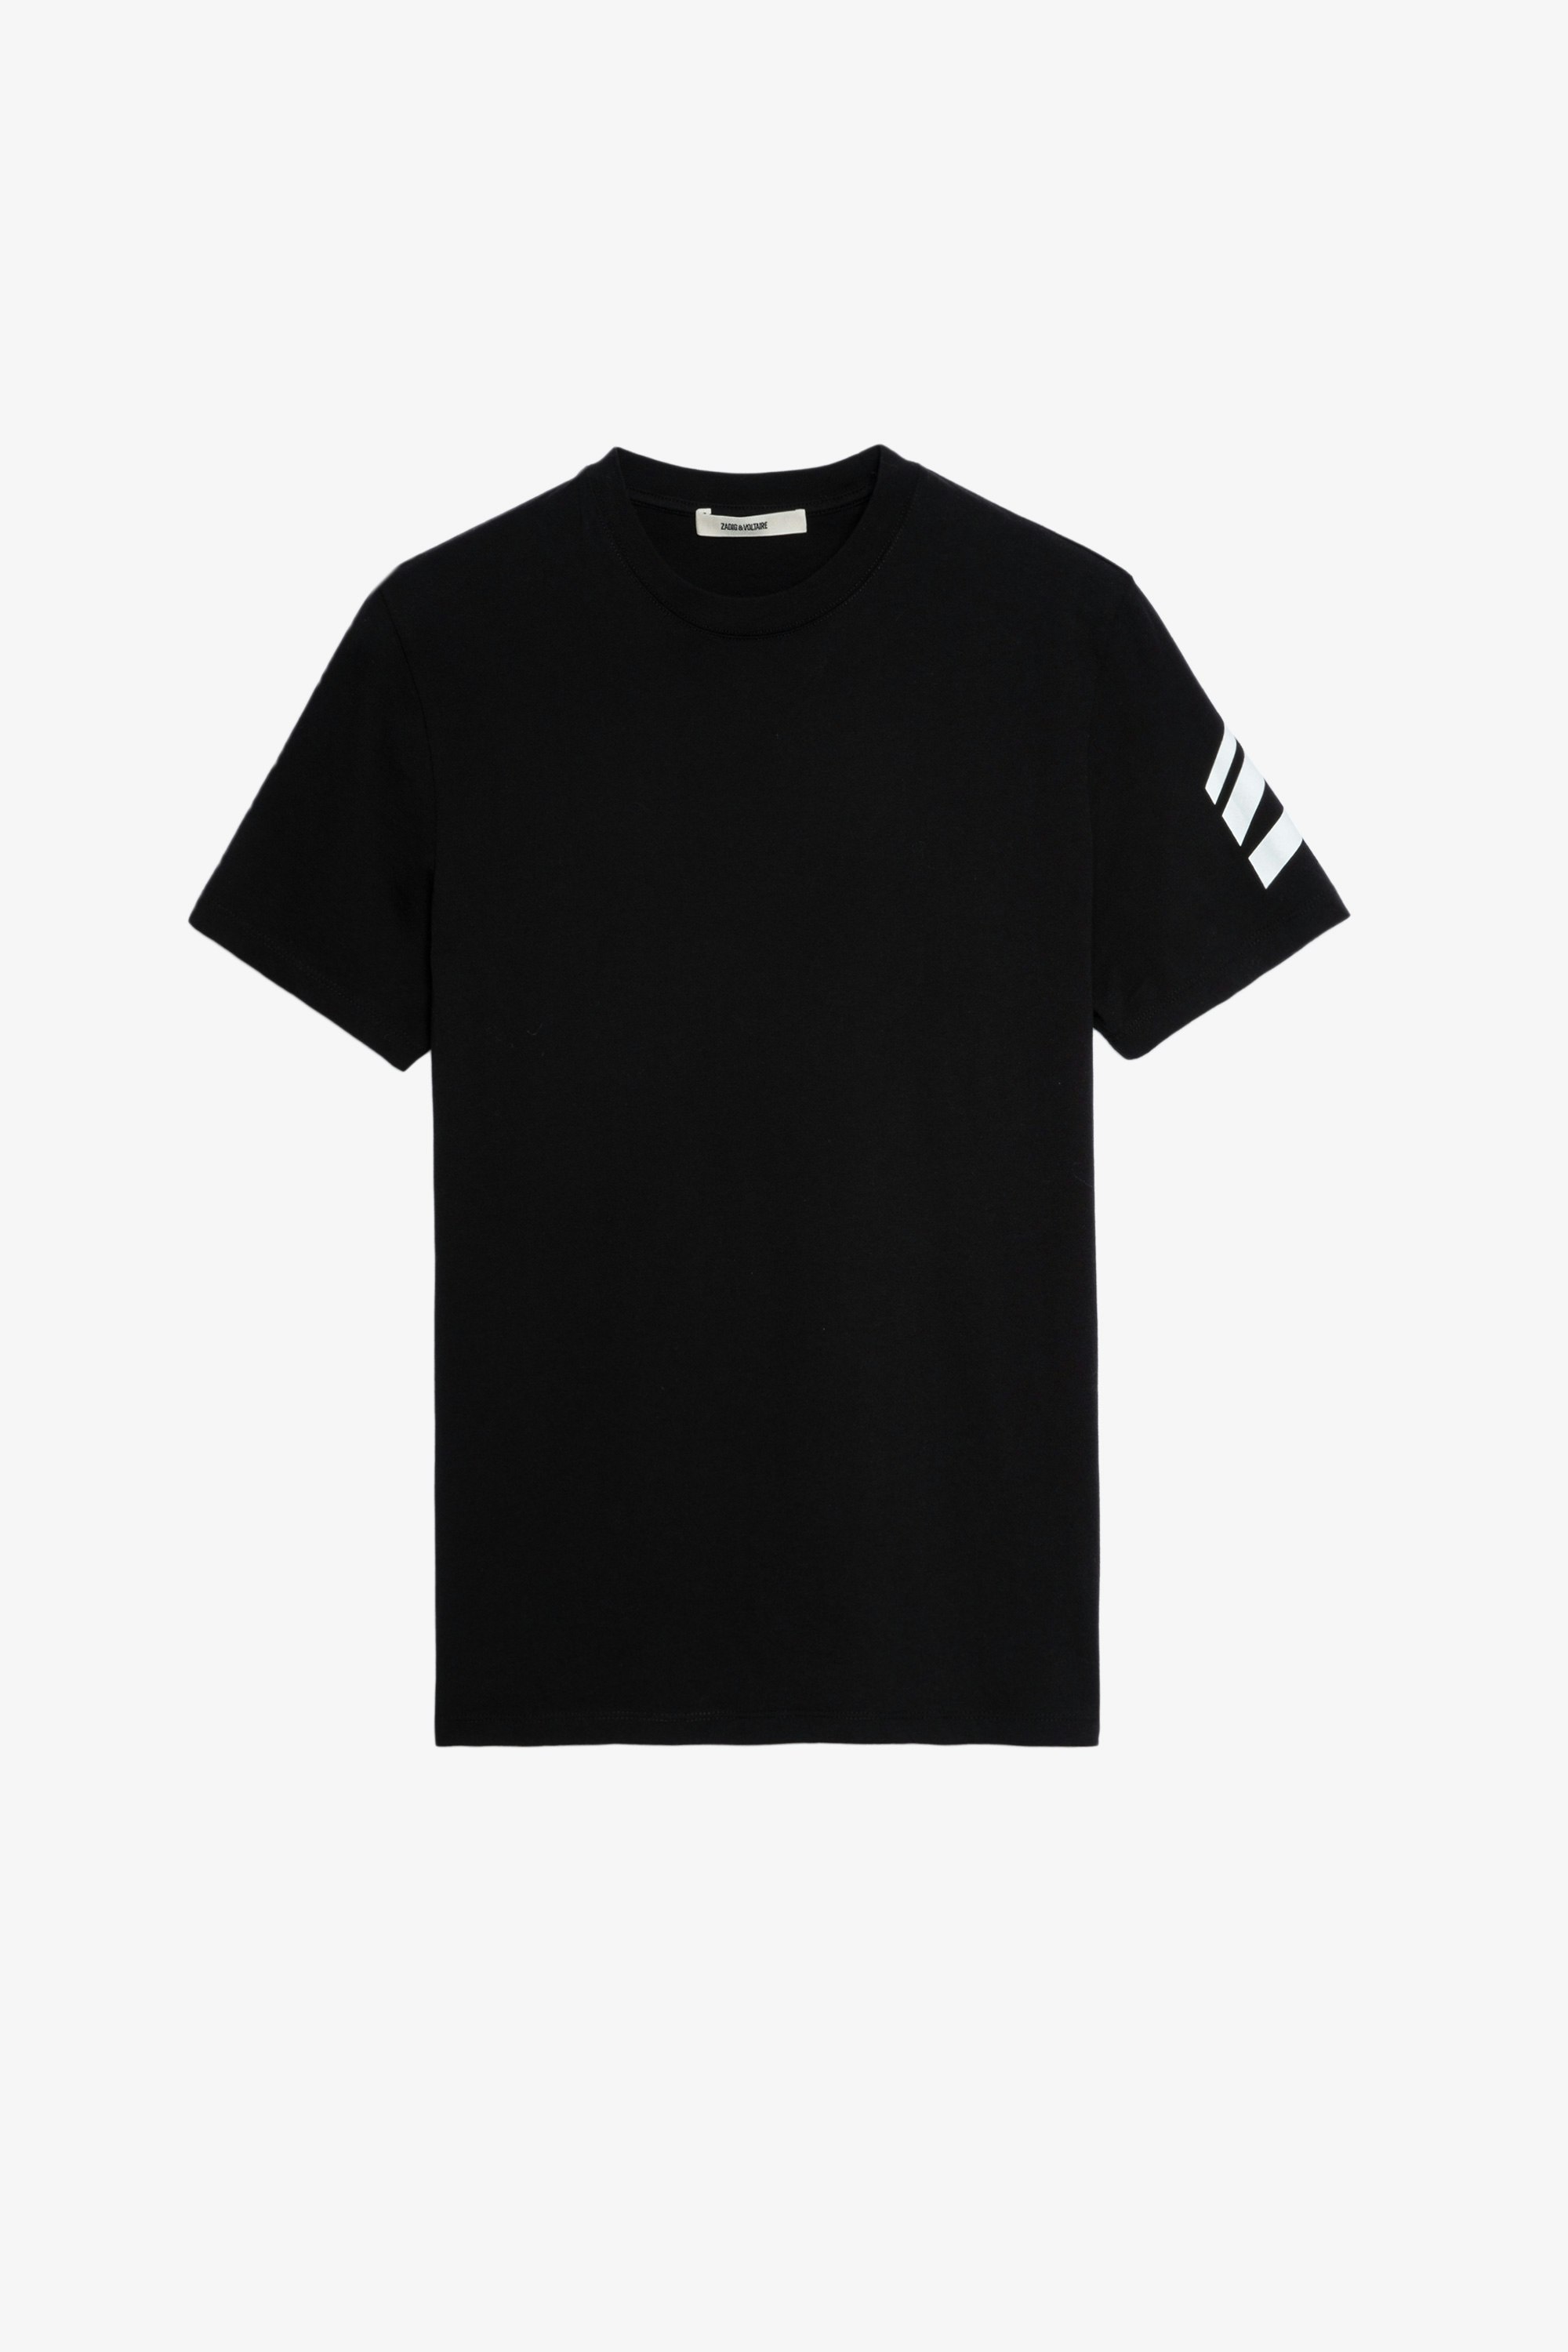 T-Shirt Tommy HC Arrow T-Shirt aus Baumwolle in schwarzer Farbe mit einem eingeschriebenen Pfeil auf dem linken Ärmel Männlich